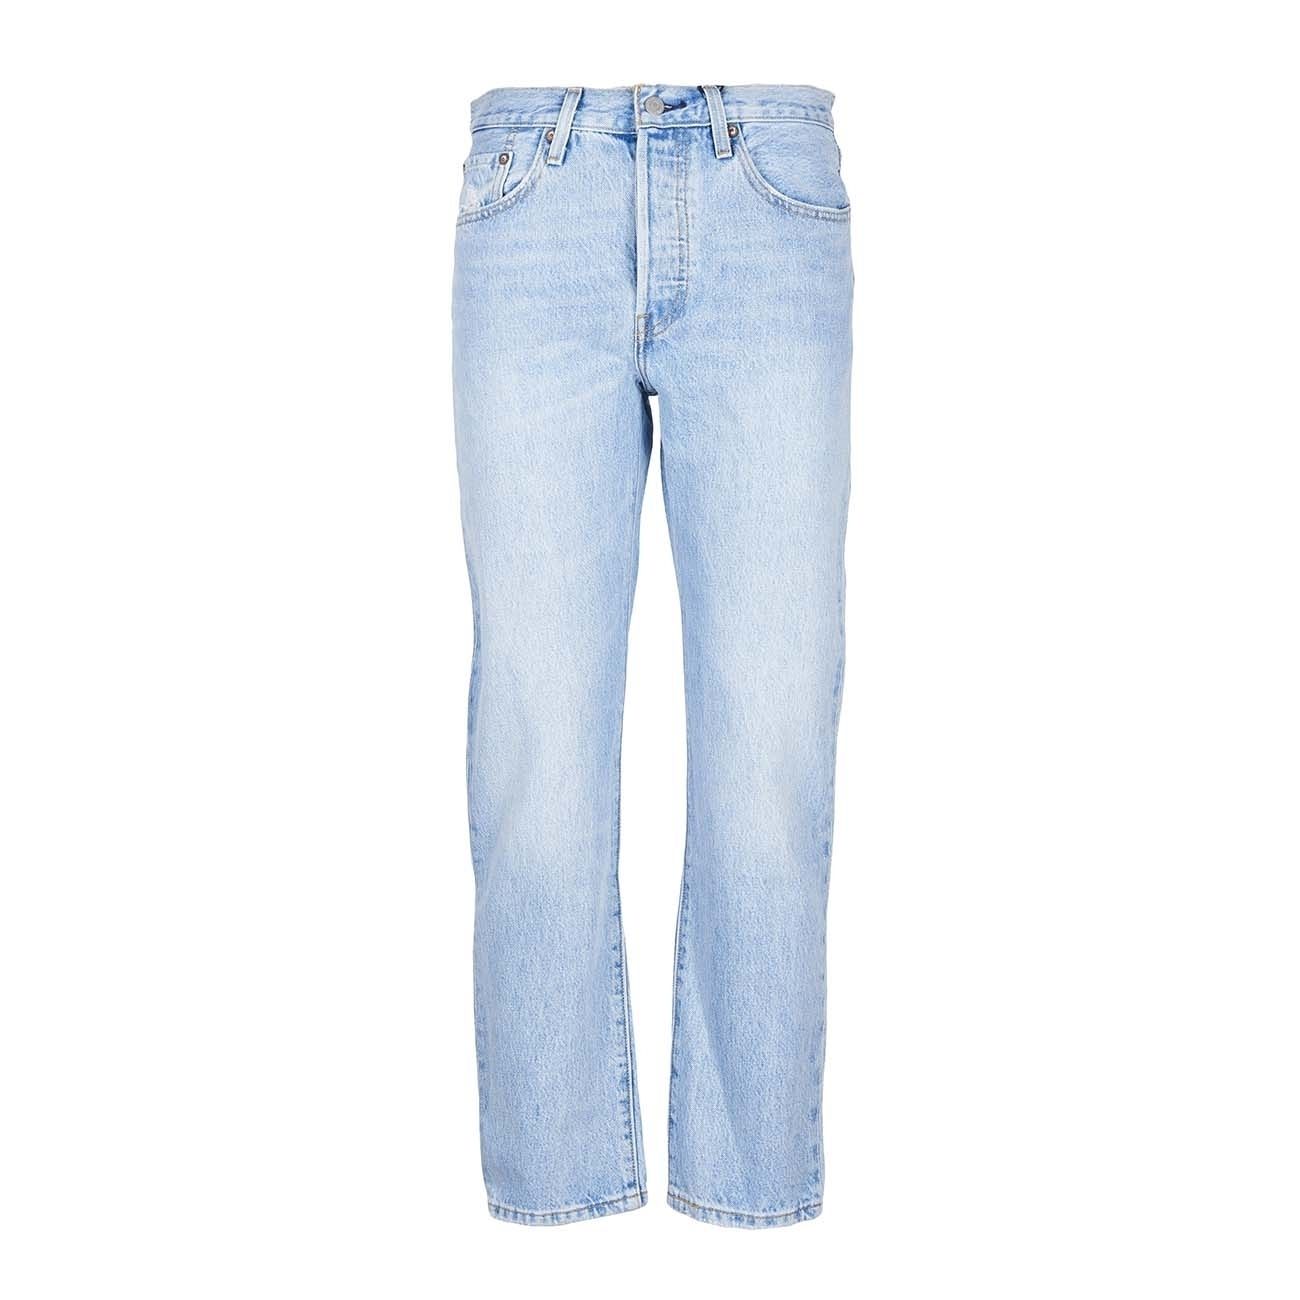 boyfriend jeans levis 501